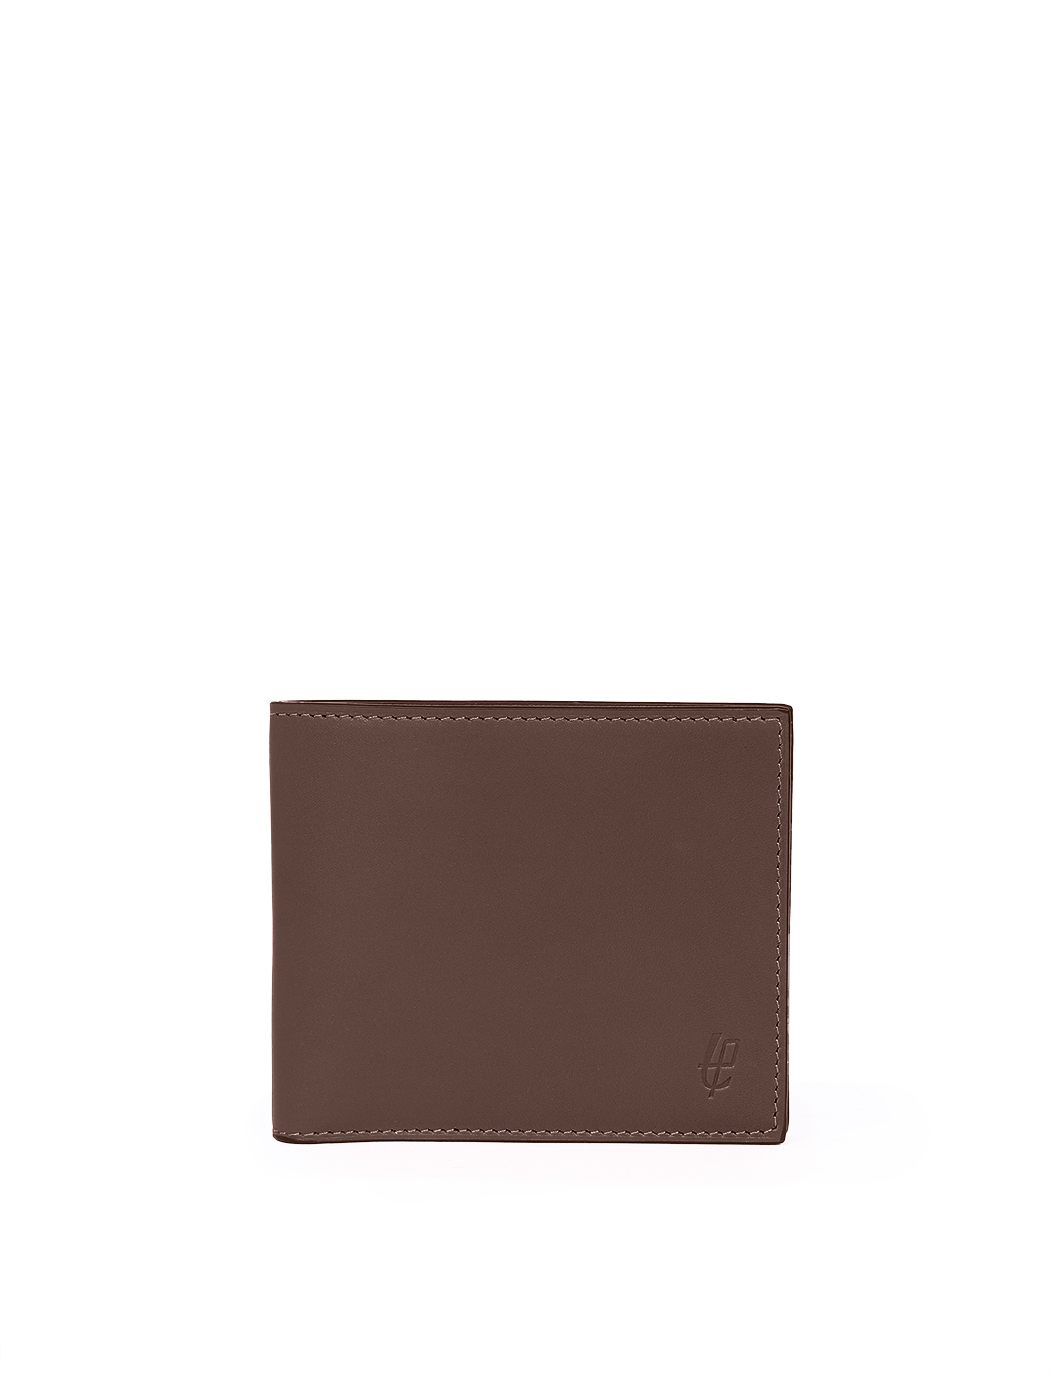 Кожаный кошелек темно - коричневого цвета